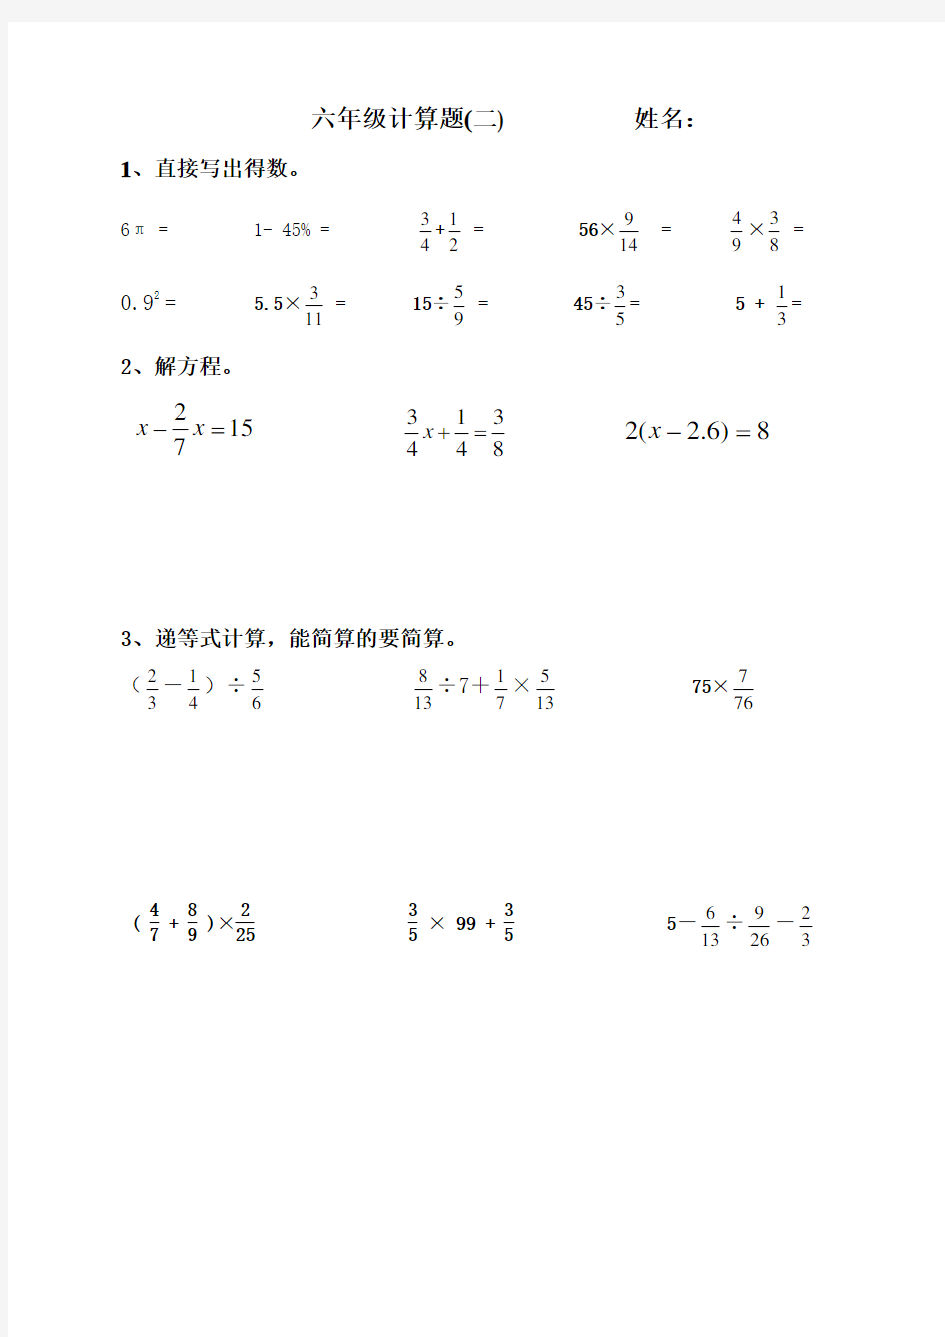 (完整)六年级上册数学计算题(期末复习用)